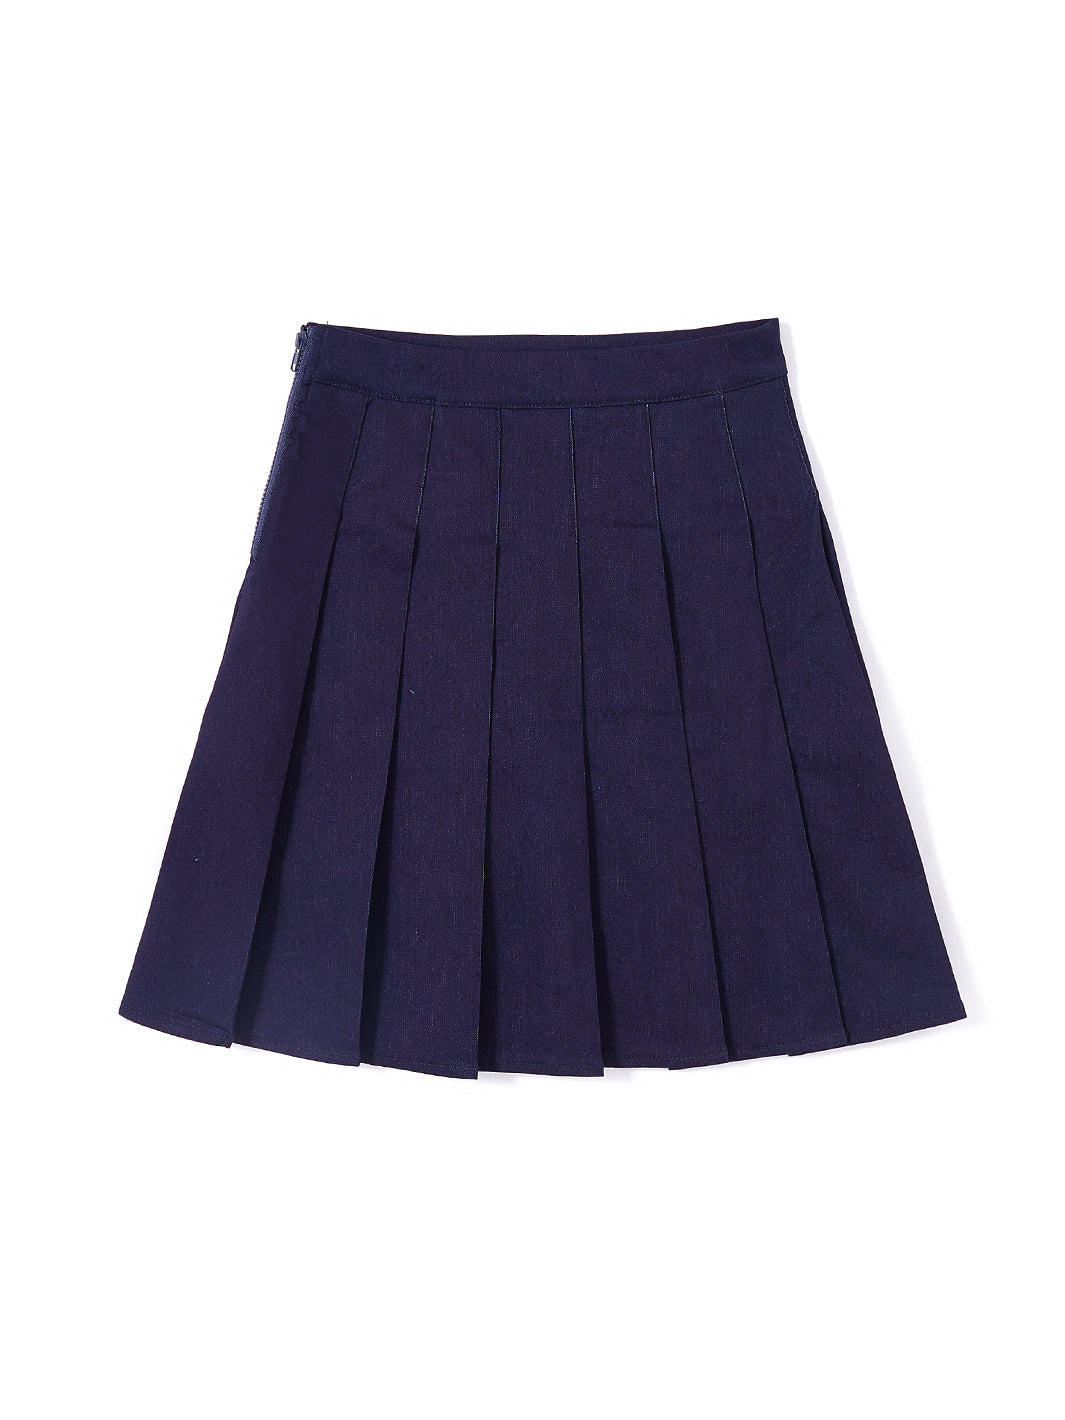 Denim Pleated Skirt - Navy